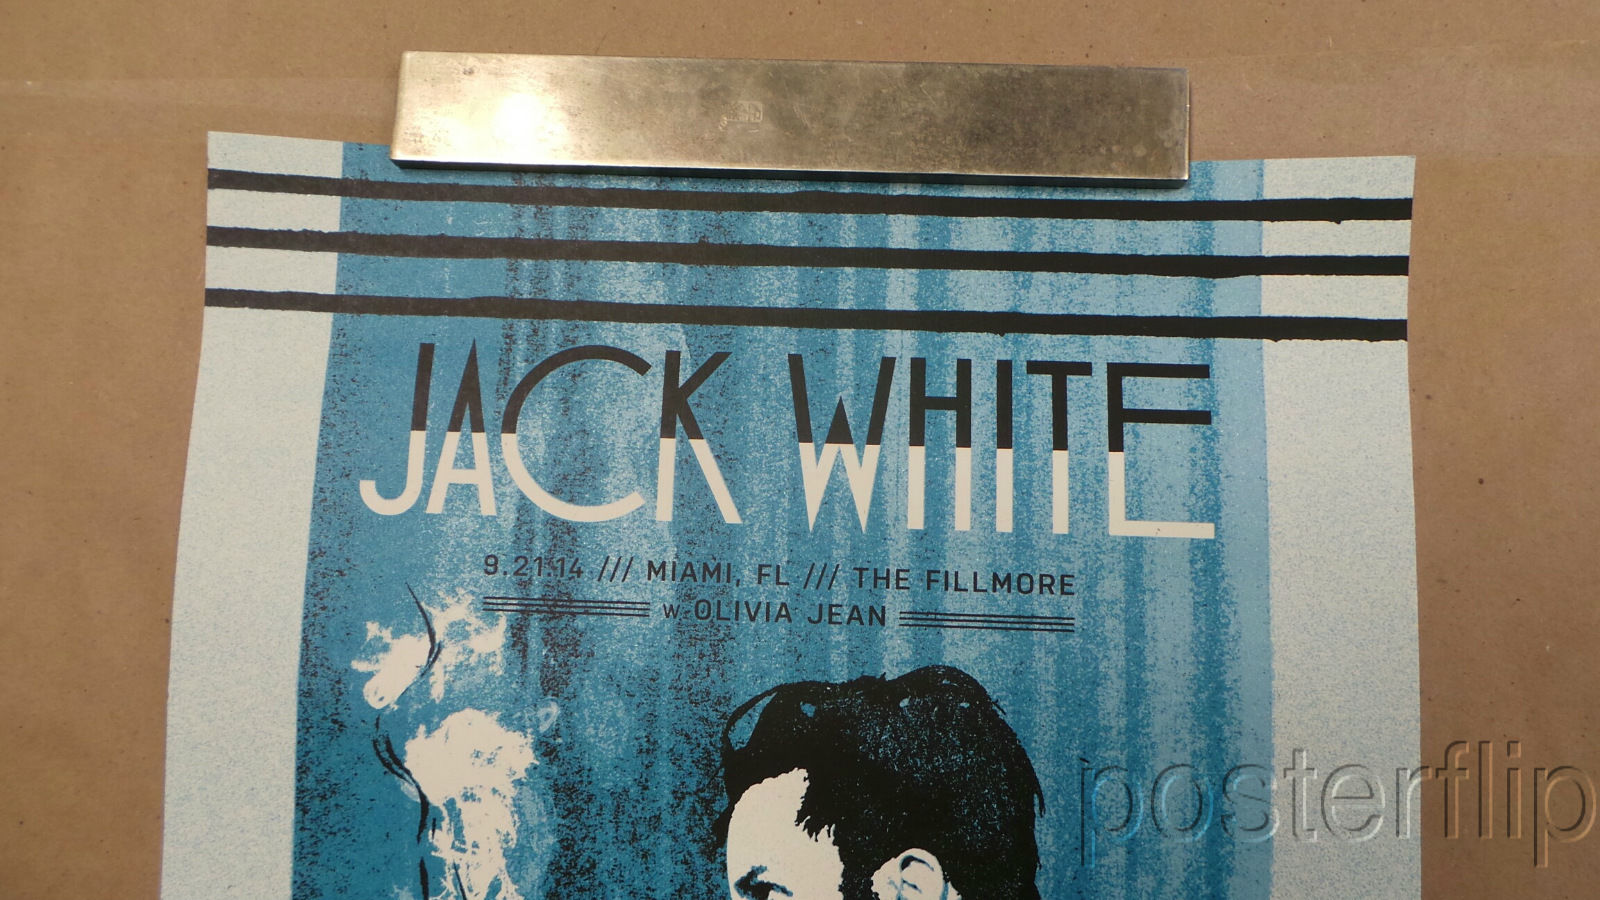 Jack White The Fillmore Miami FL Sep 21 2014 The Silent Giants